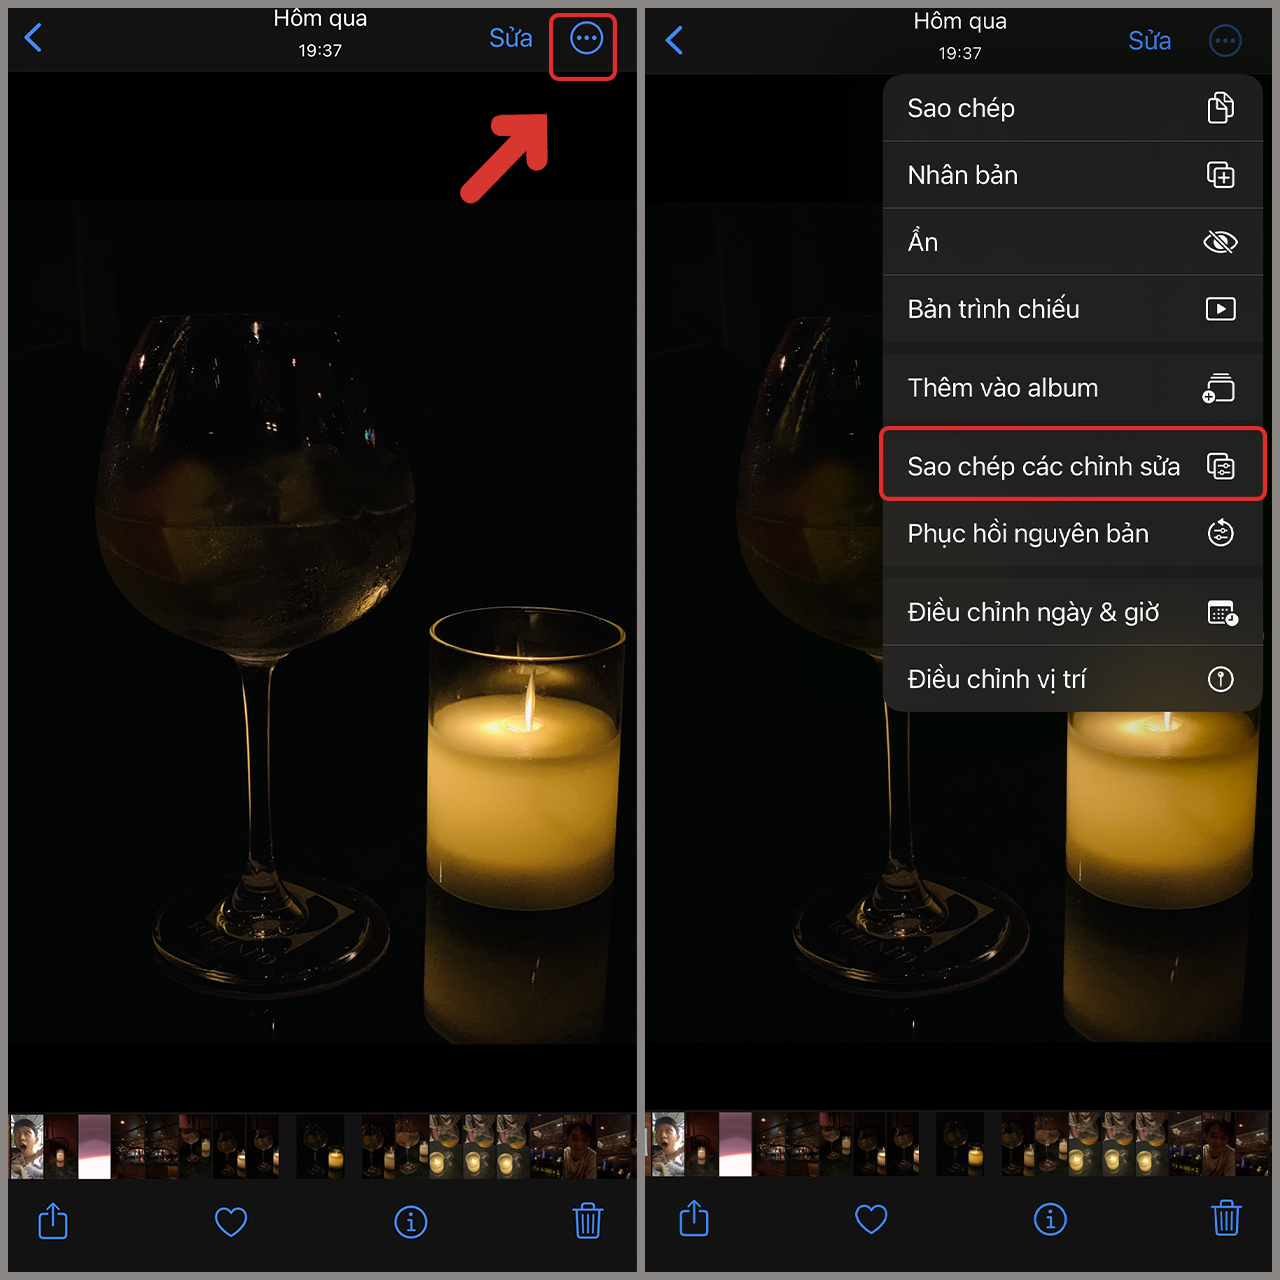 Với iOS 16 trên iPhone, bạn có thể sao chép màu ảnh một cách dễ dàng và nhanh chóng. Hãy thử các cách sao chép màu ảnh độc đáo để tạo ra những bức ảnh mới lạ và ấn tượng. Khám phá các tính năng mới của iOS 16 và thử các bộ lọc và hiệu ứng để tạo ra những bức ảnh đẹp nhất.